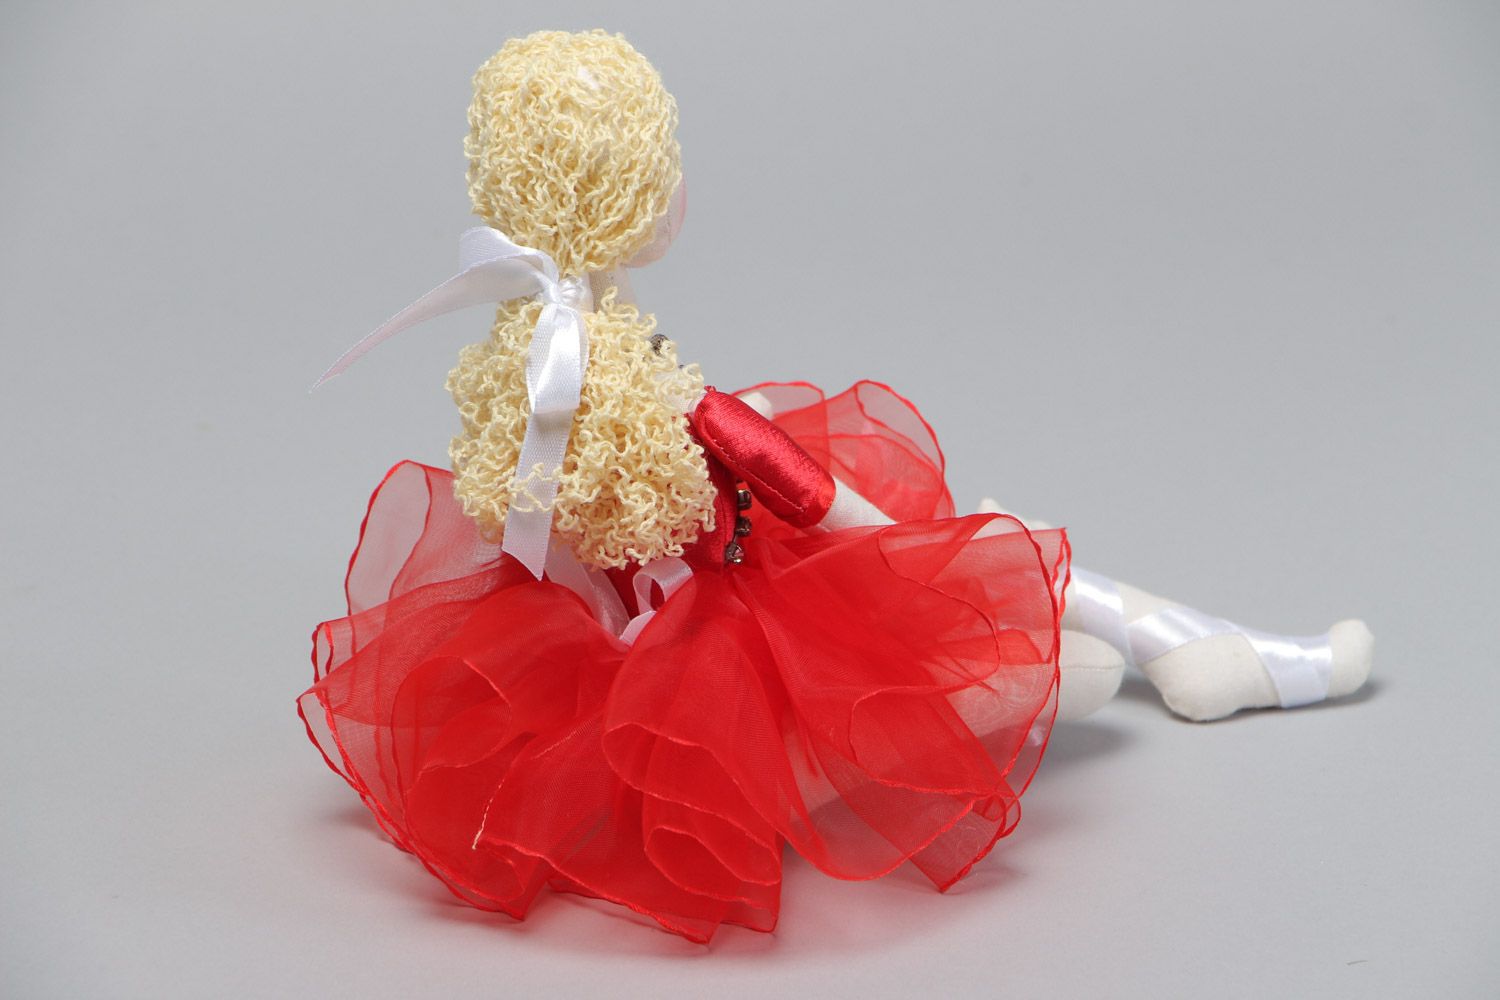 Мягкая игрушка в виде балерины ручной работы из хлопка и льна для девочки фото 4